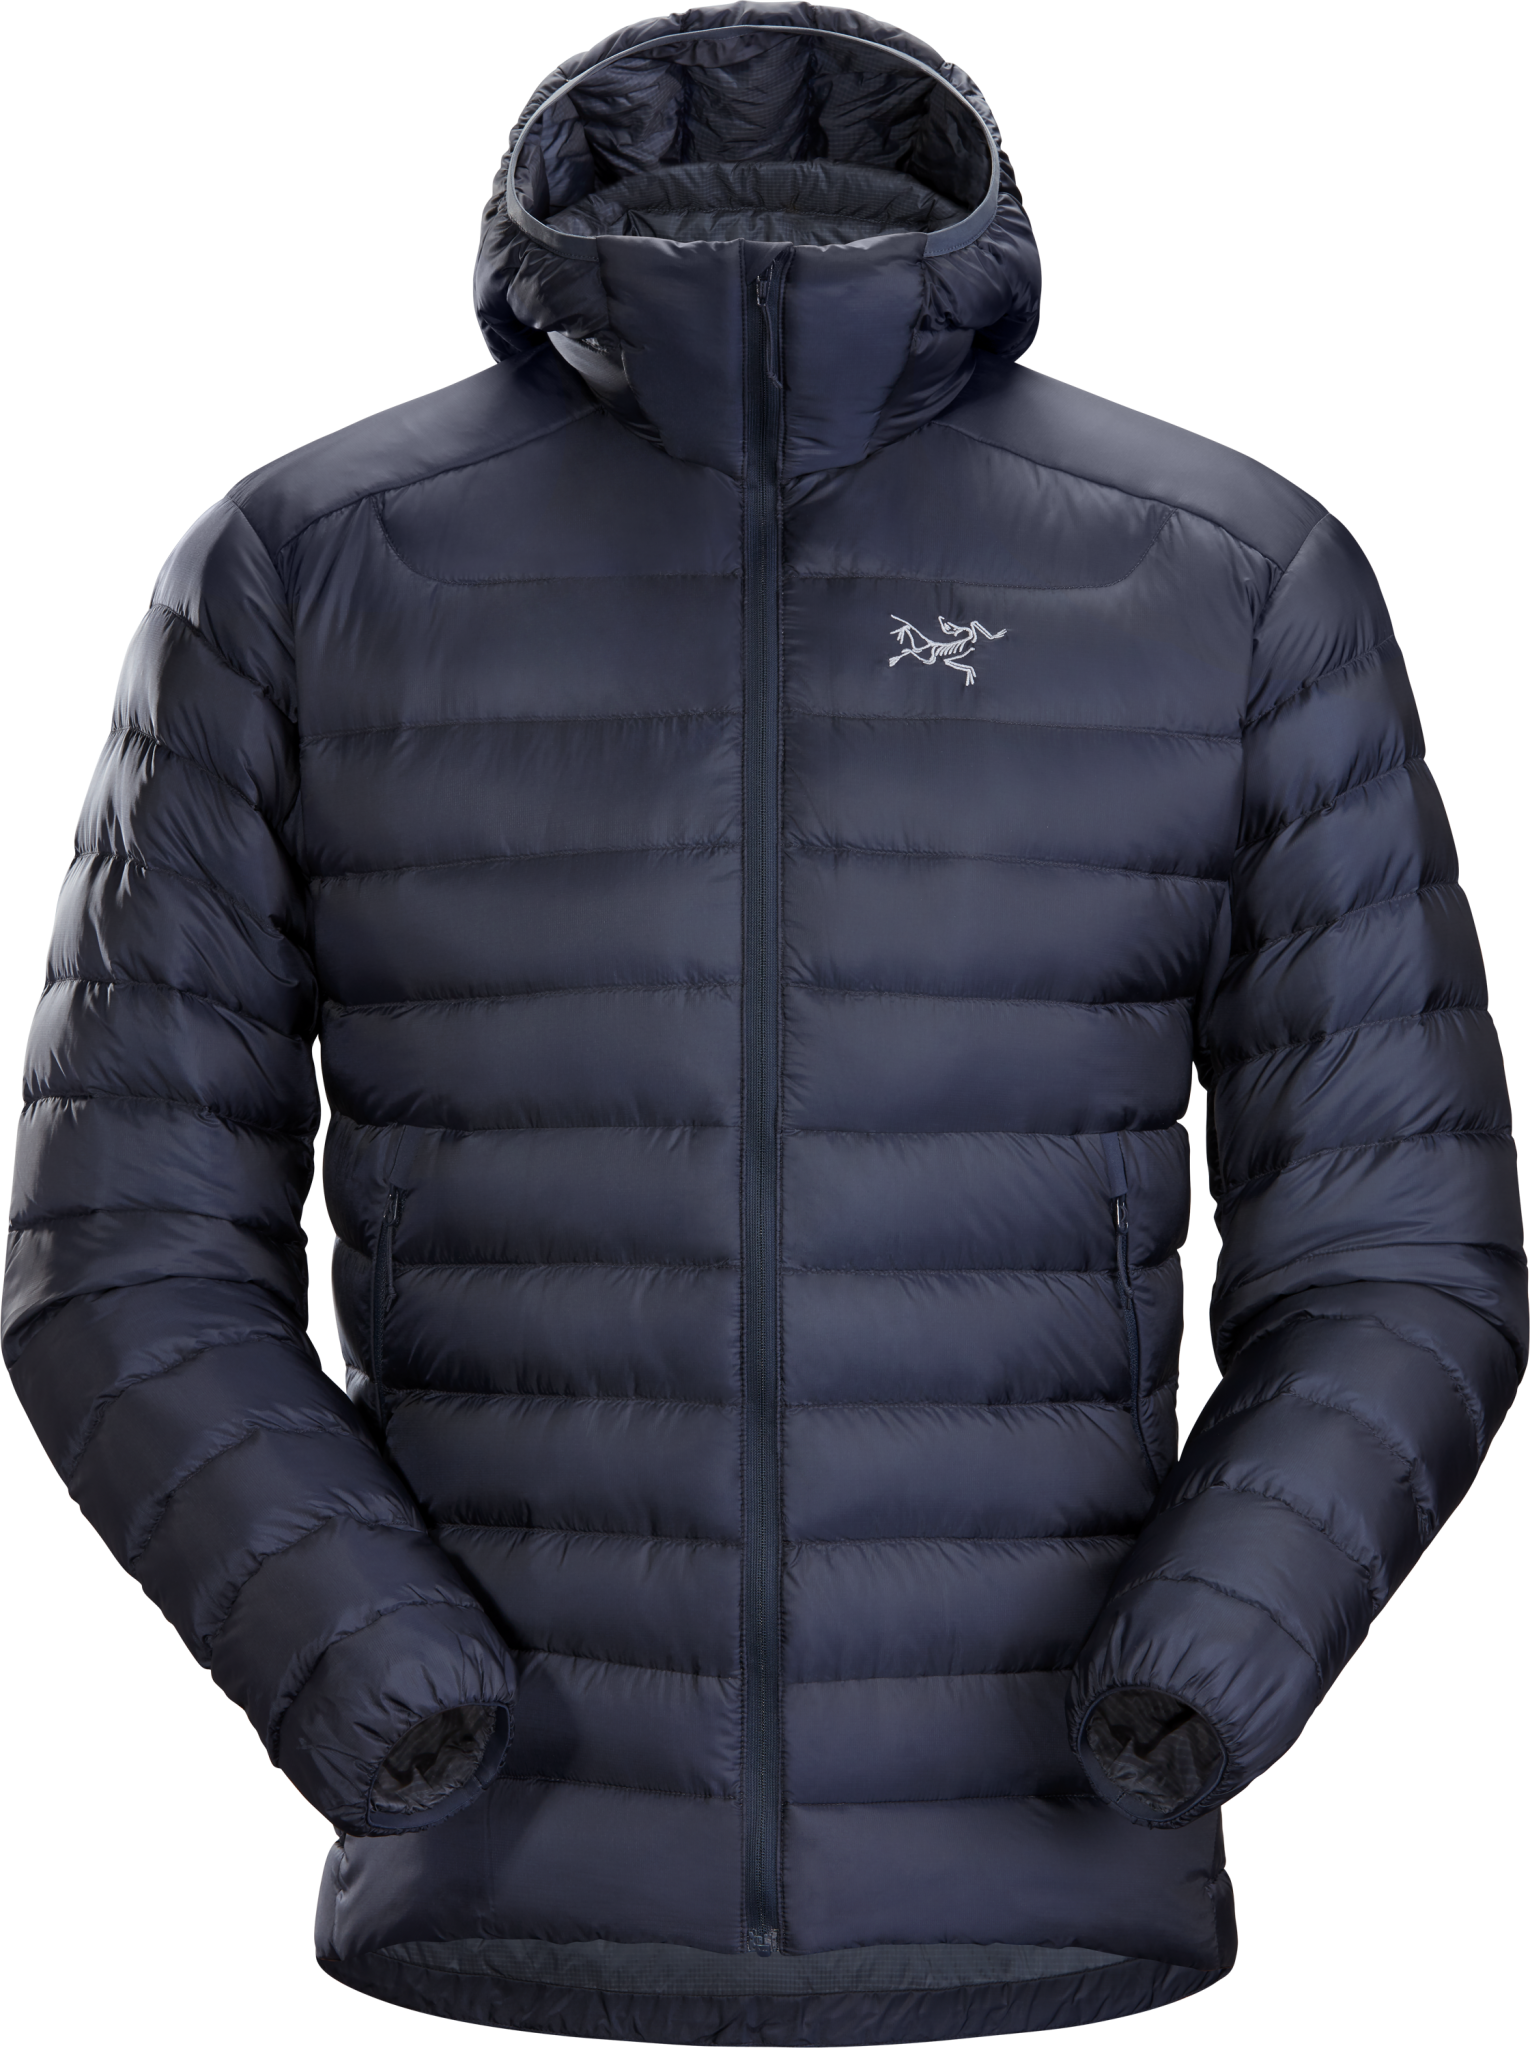 Arc'teryx, Jackets & Coats, Arcteryx Full Zip Atom Lt Hooded Jacket